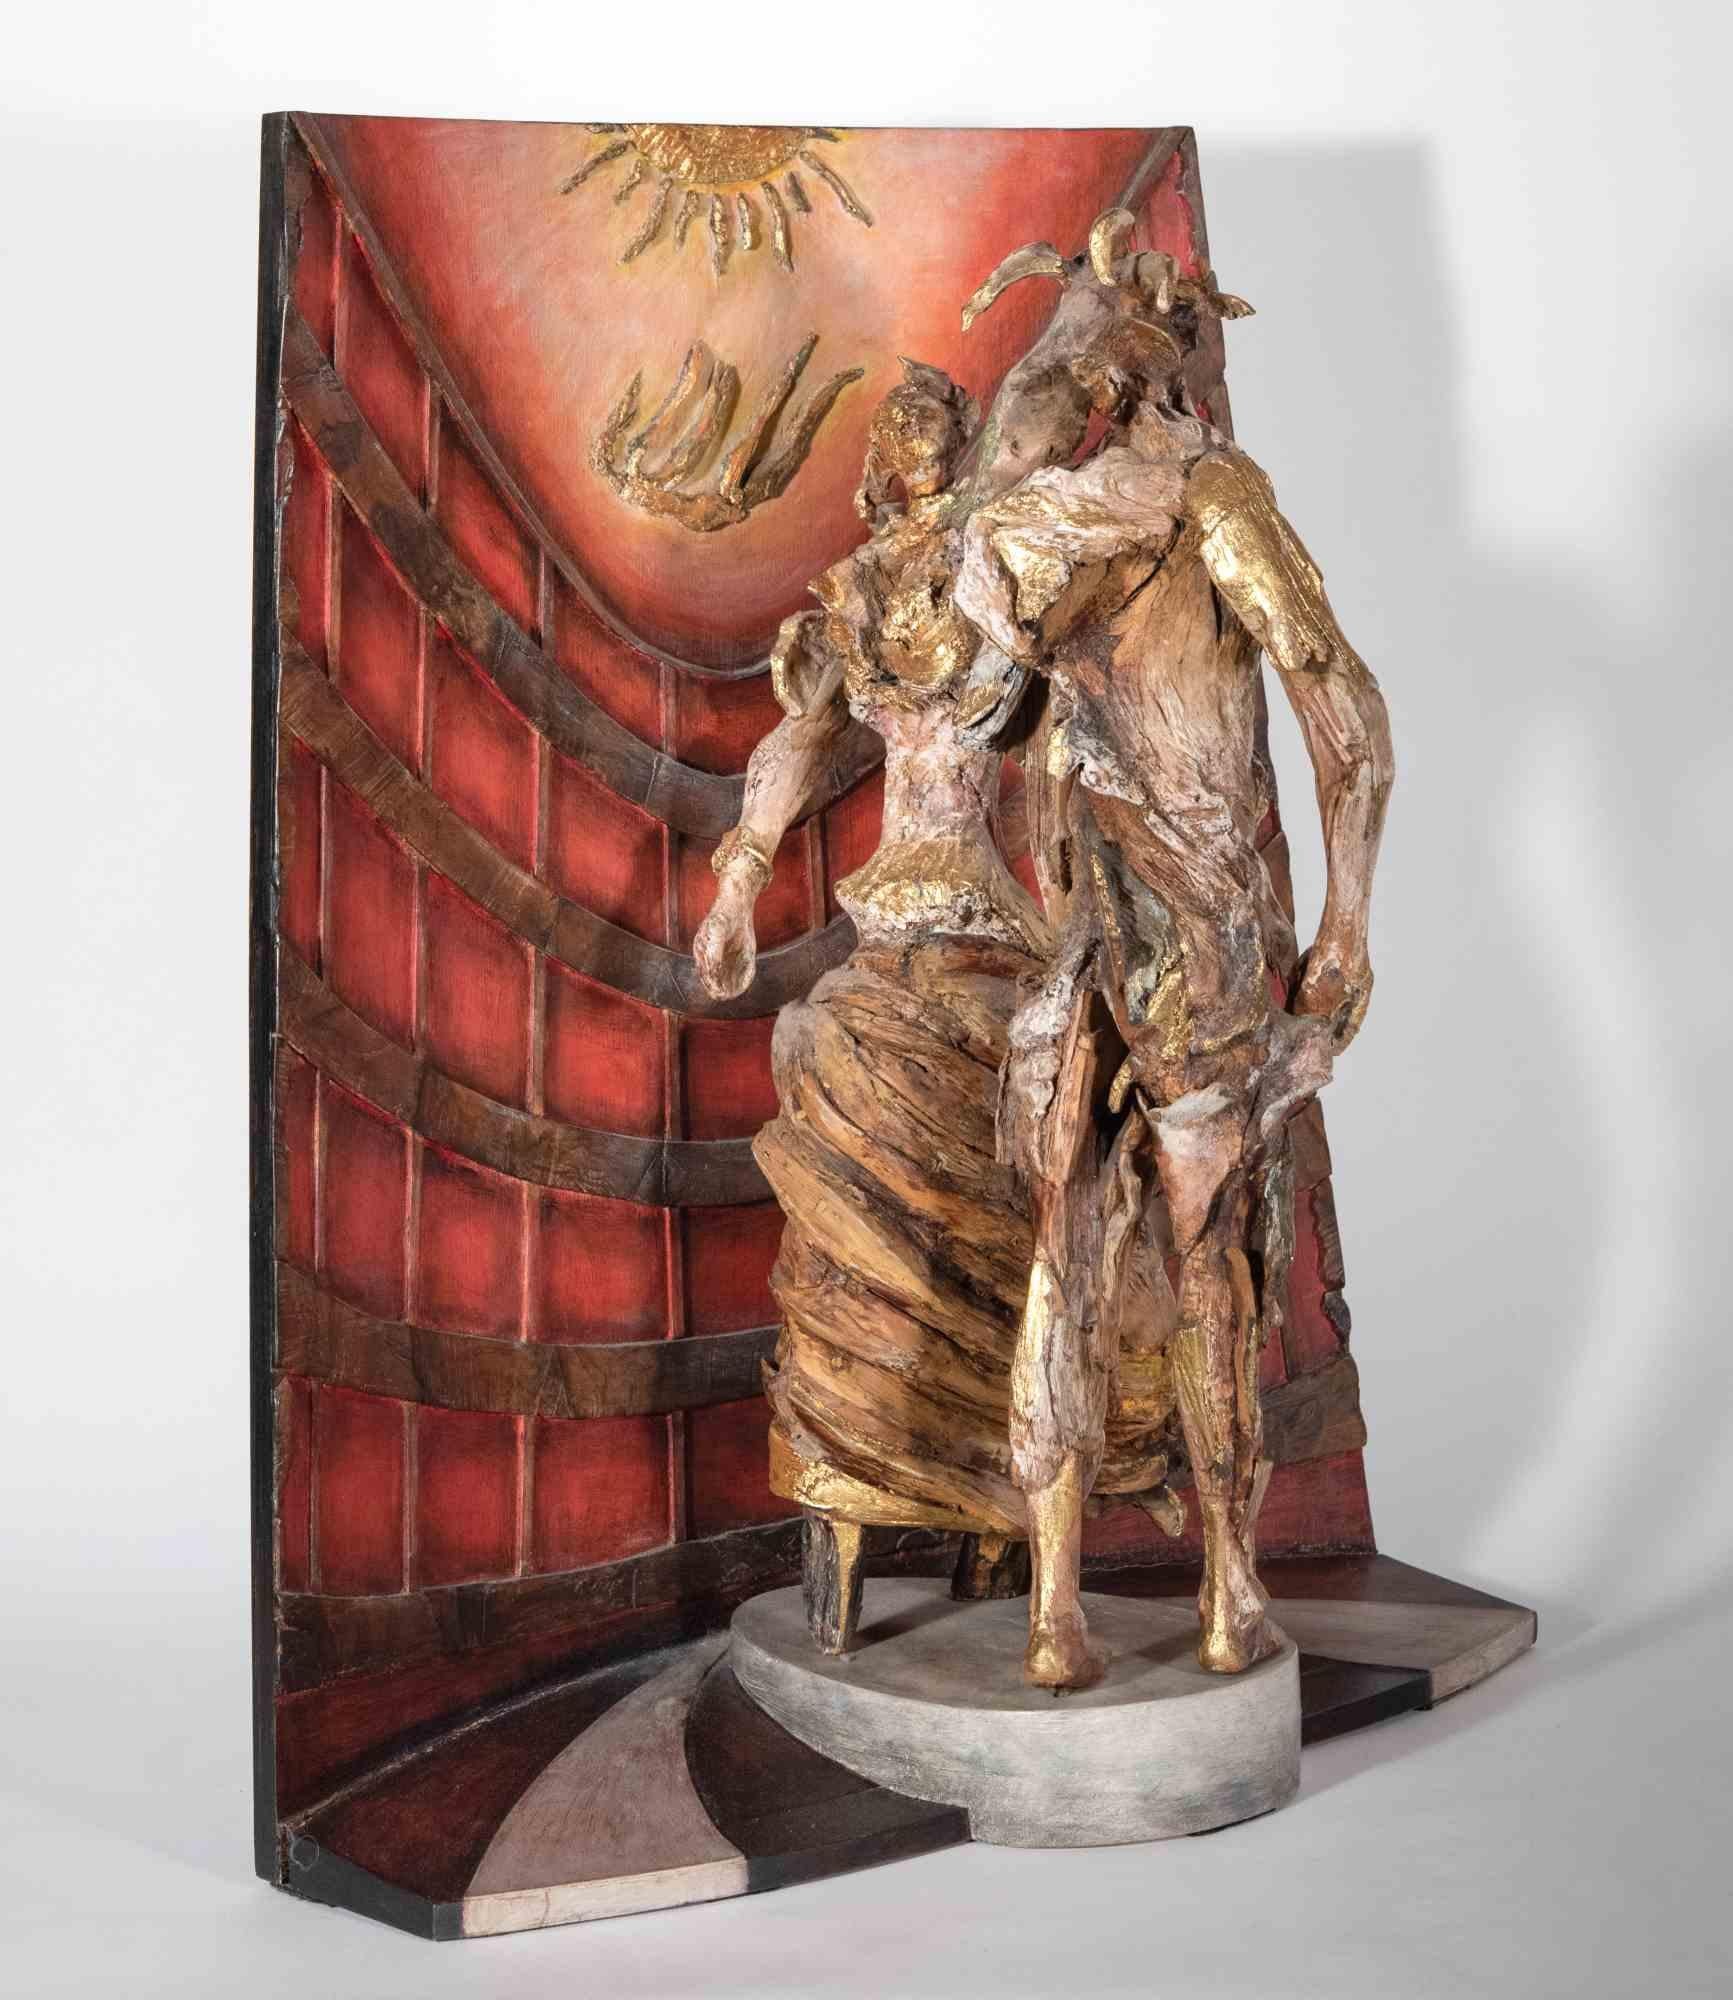 Tiefgründige Skulptur, in ausgezeichnetem Zustand, geschaffen in Blattgold, Ebenholz und Holz, handbemalt vom Bildhauer Lorenzo Servalli, um im Jahr 1999 die Metapher des Lebens zu erzählen, dargestellt durch Ikarus, Symbol für uns alle, die guten